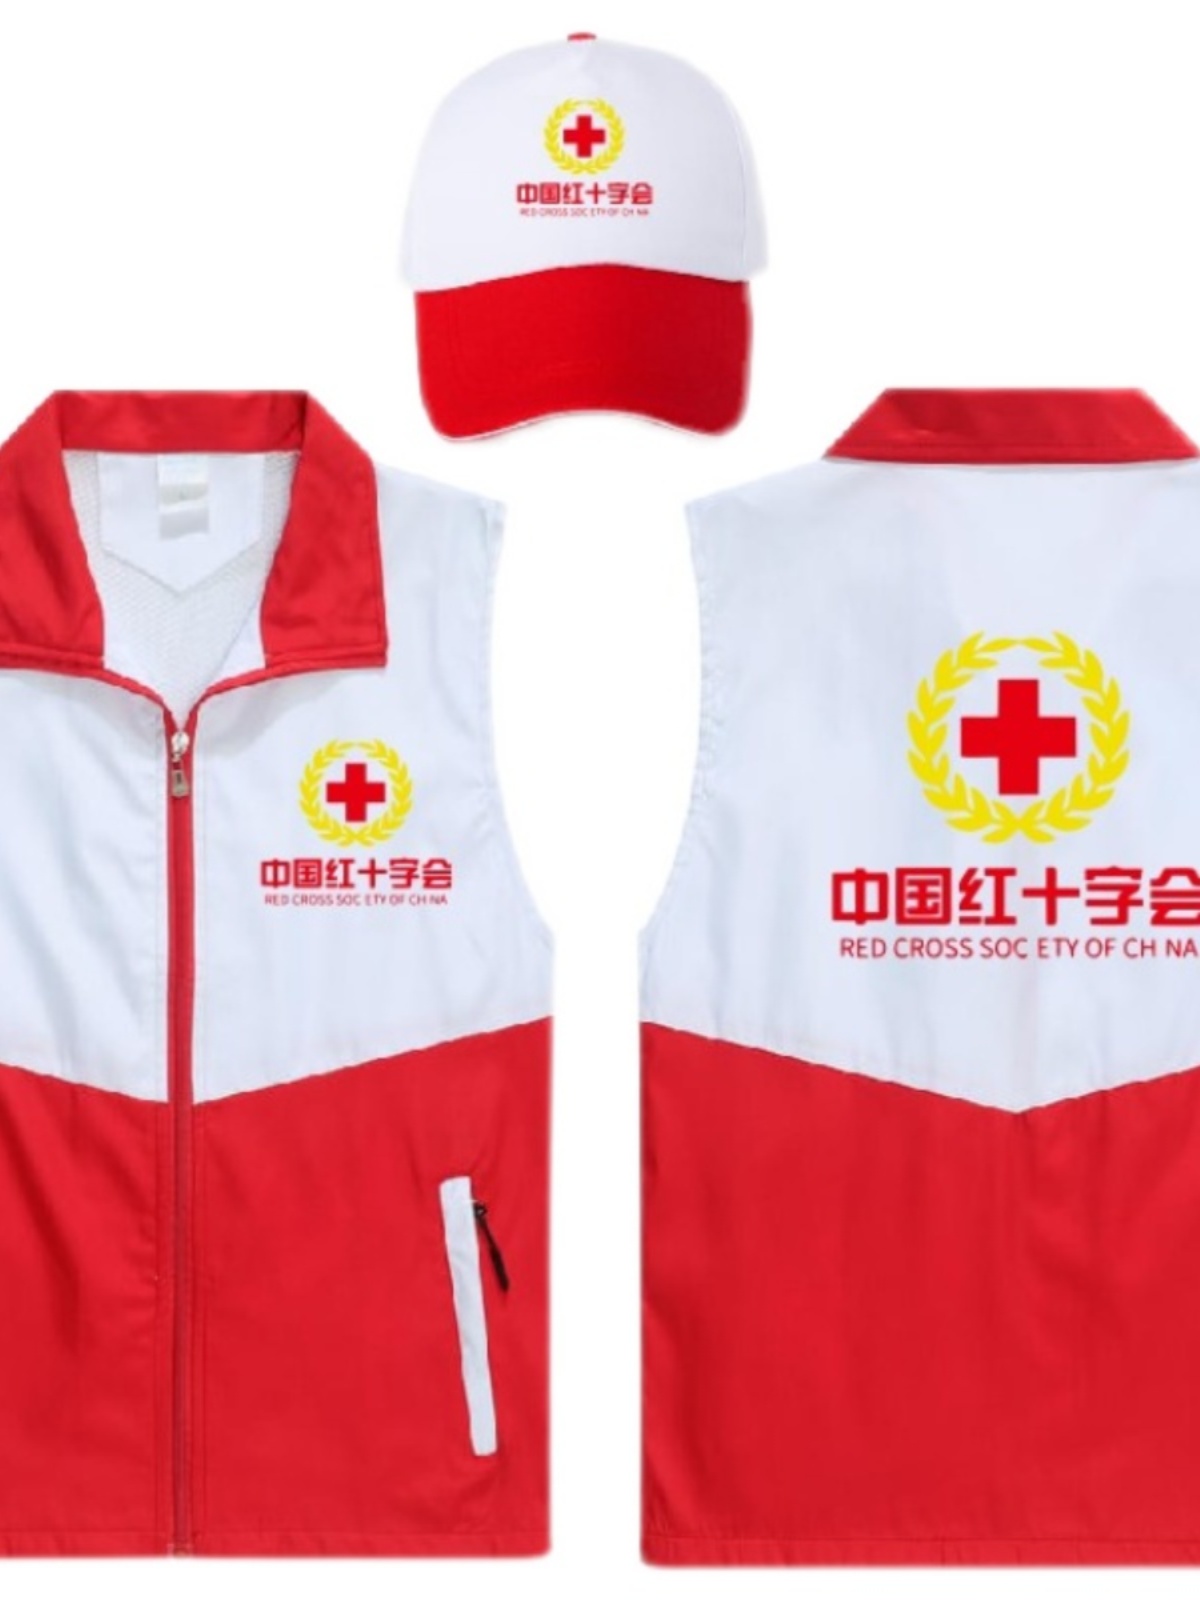 新品中国红十字会马甲订制拼接色高档双层马甲定制应急救援志愿广